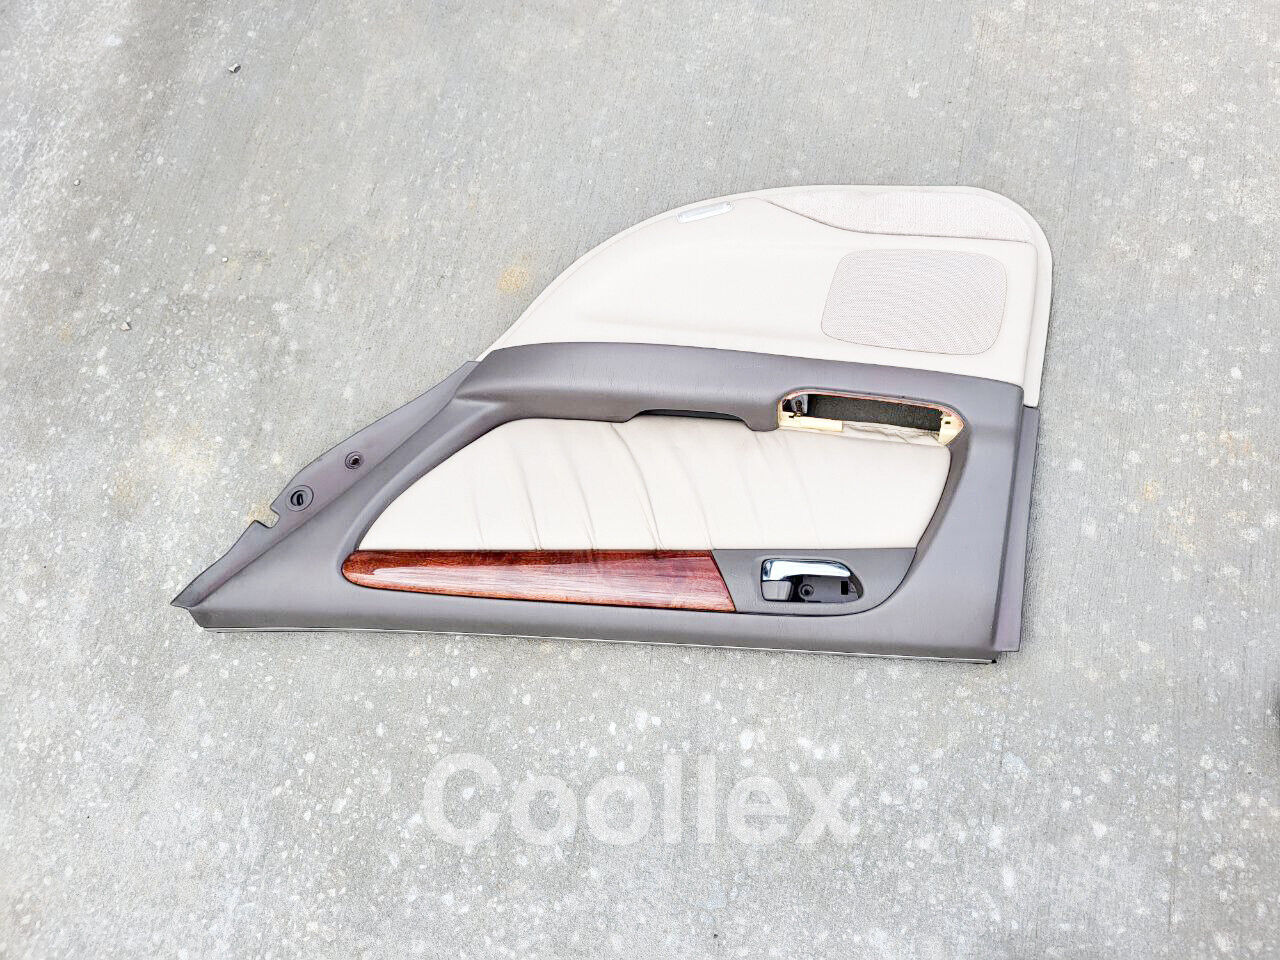 98-05 Lexus Gs300 Rear Right Door Panel 67010-30050-A0 Oem